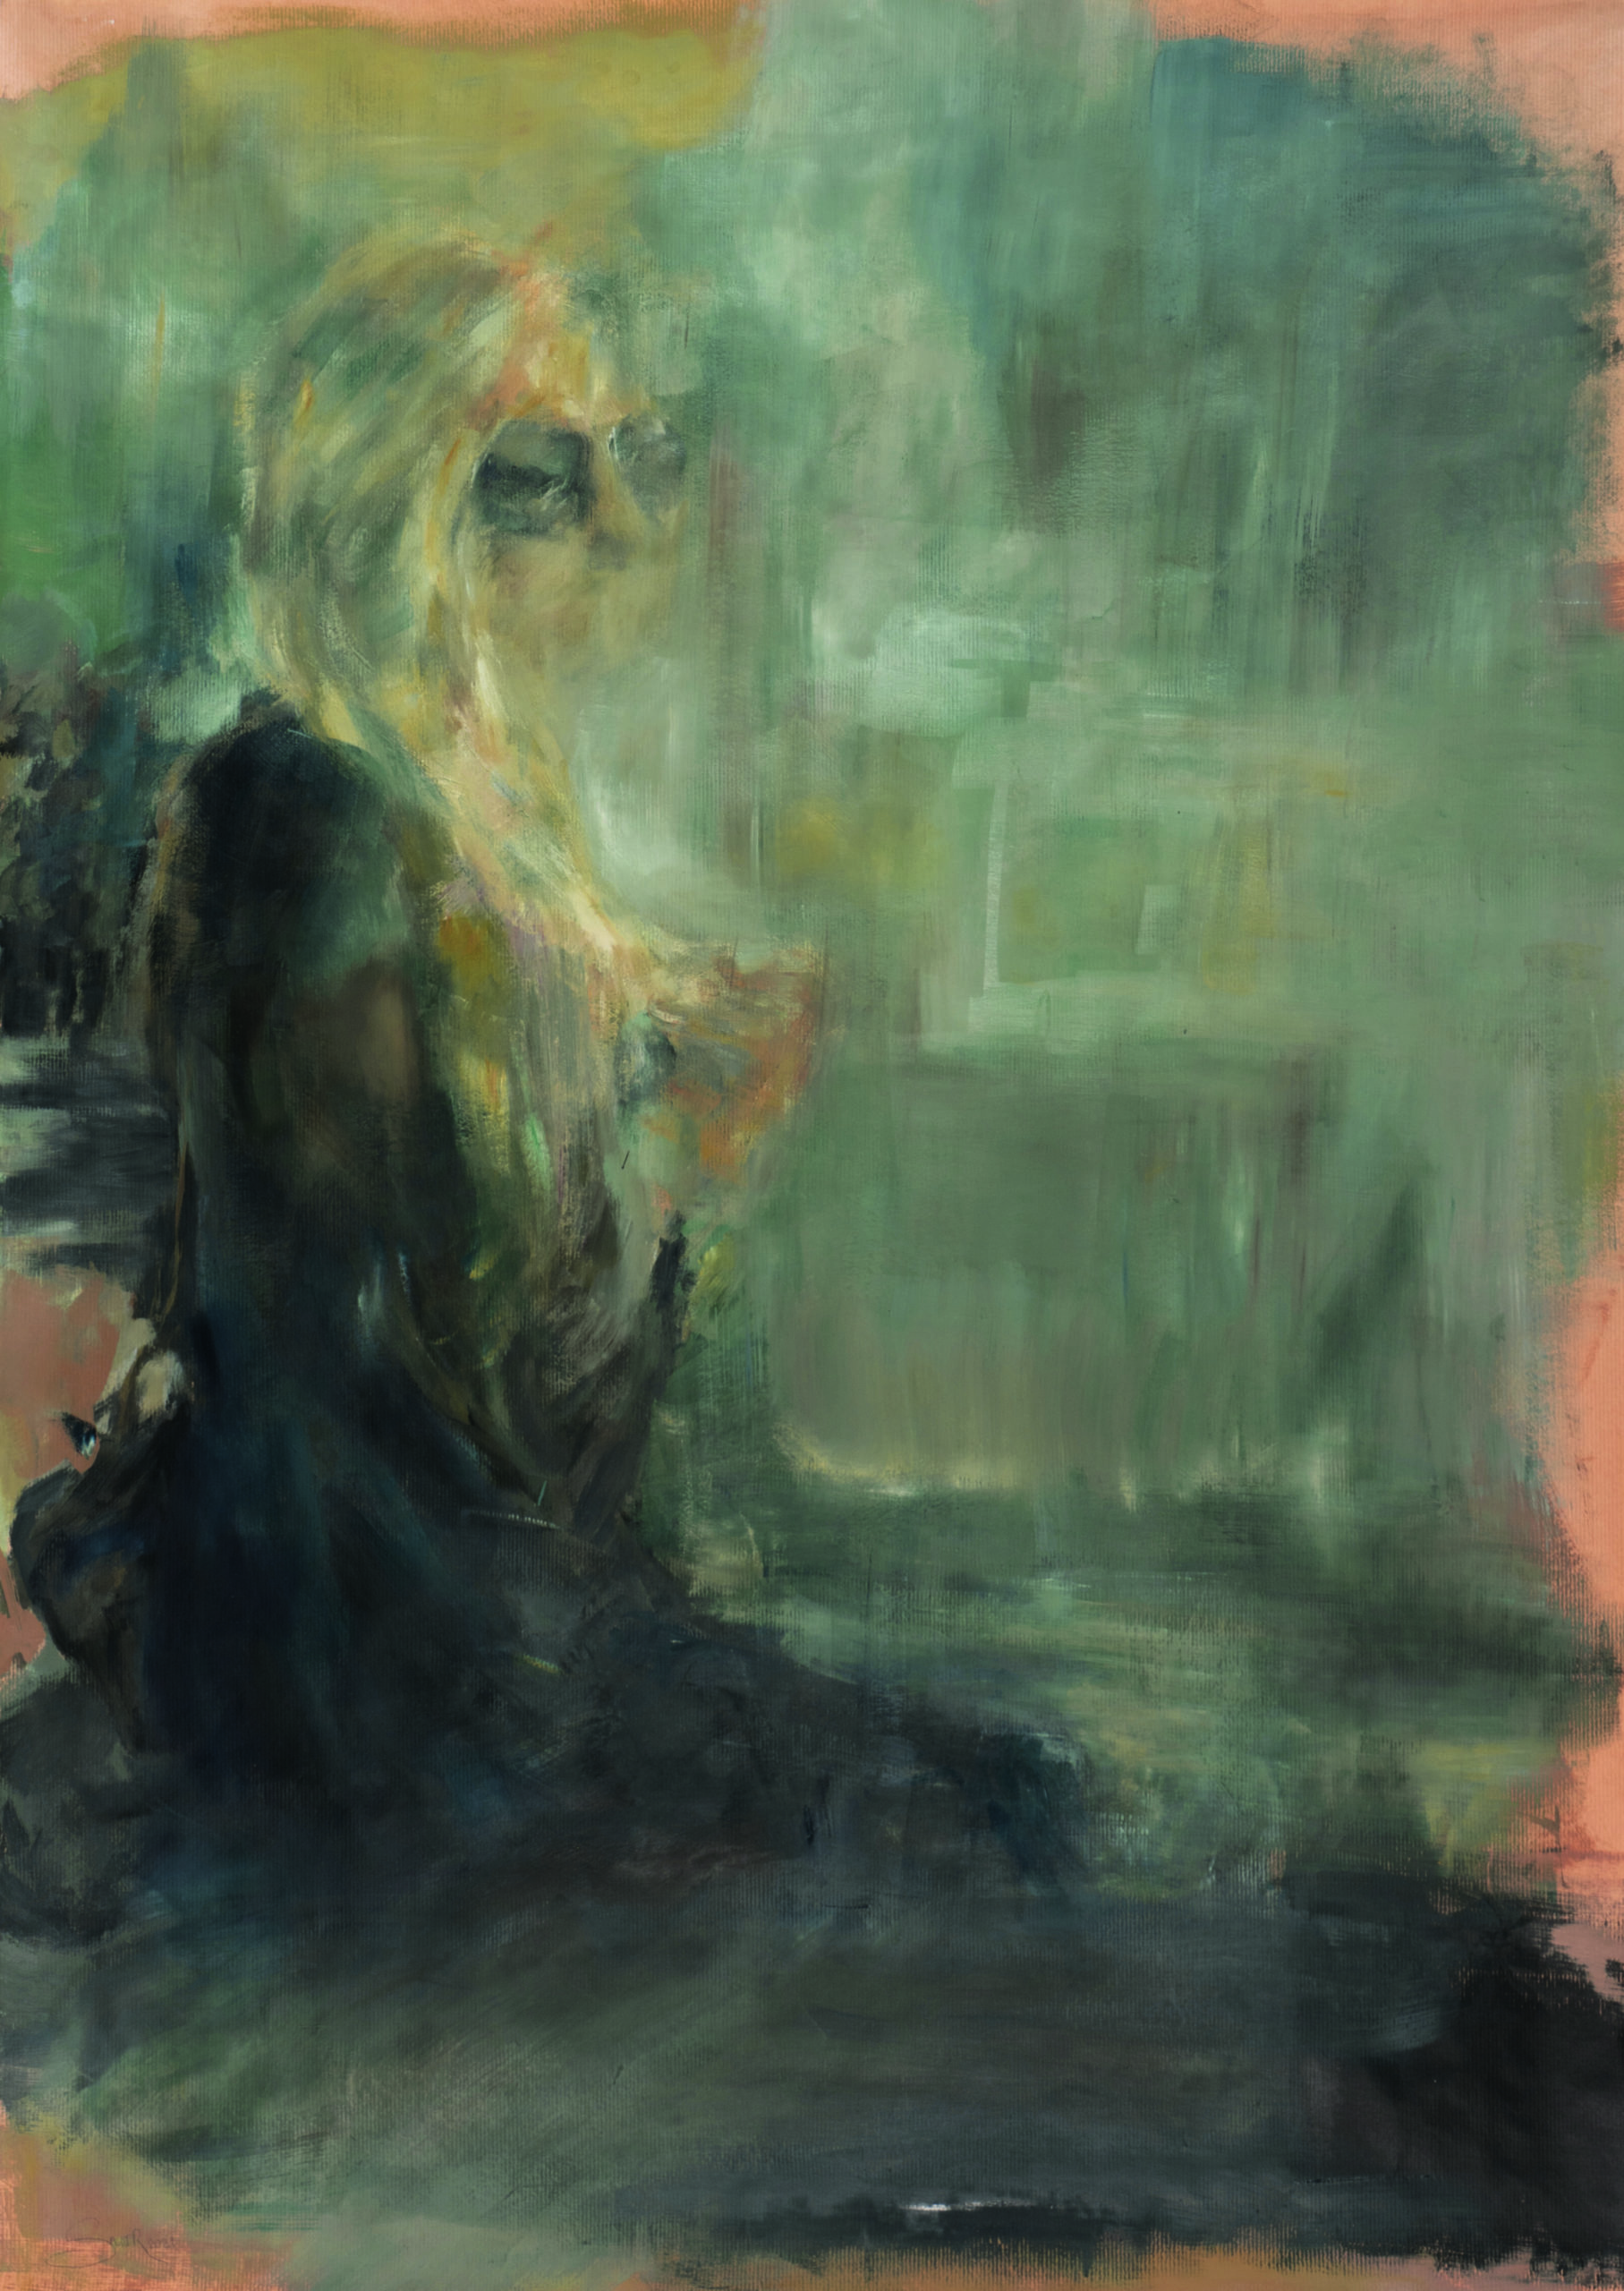 Ölbild von Nicole Sacher gemalt, mit einer Frau die melancholisch in die Weite schaut und am Wasser sitzt